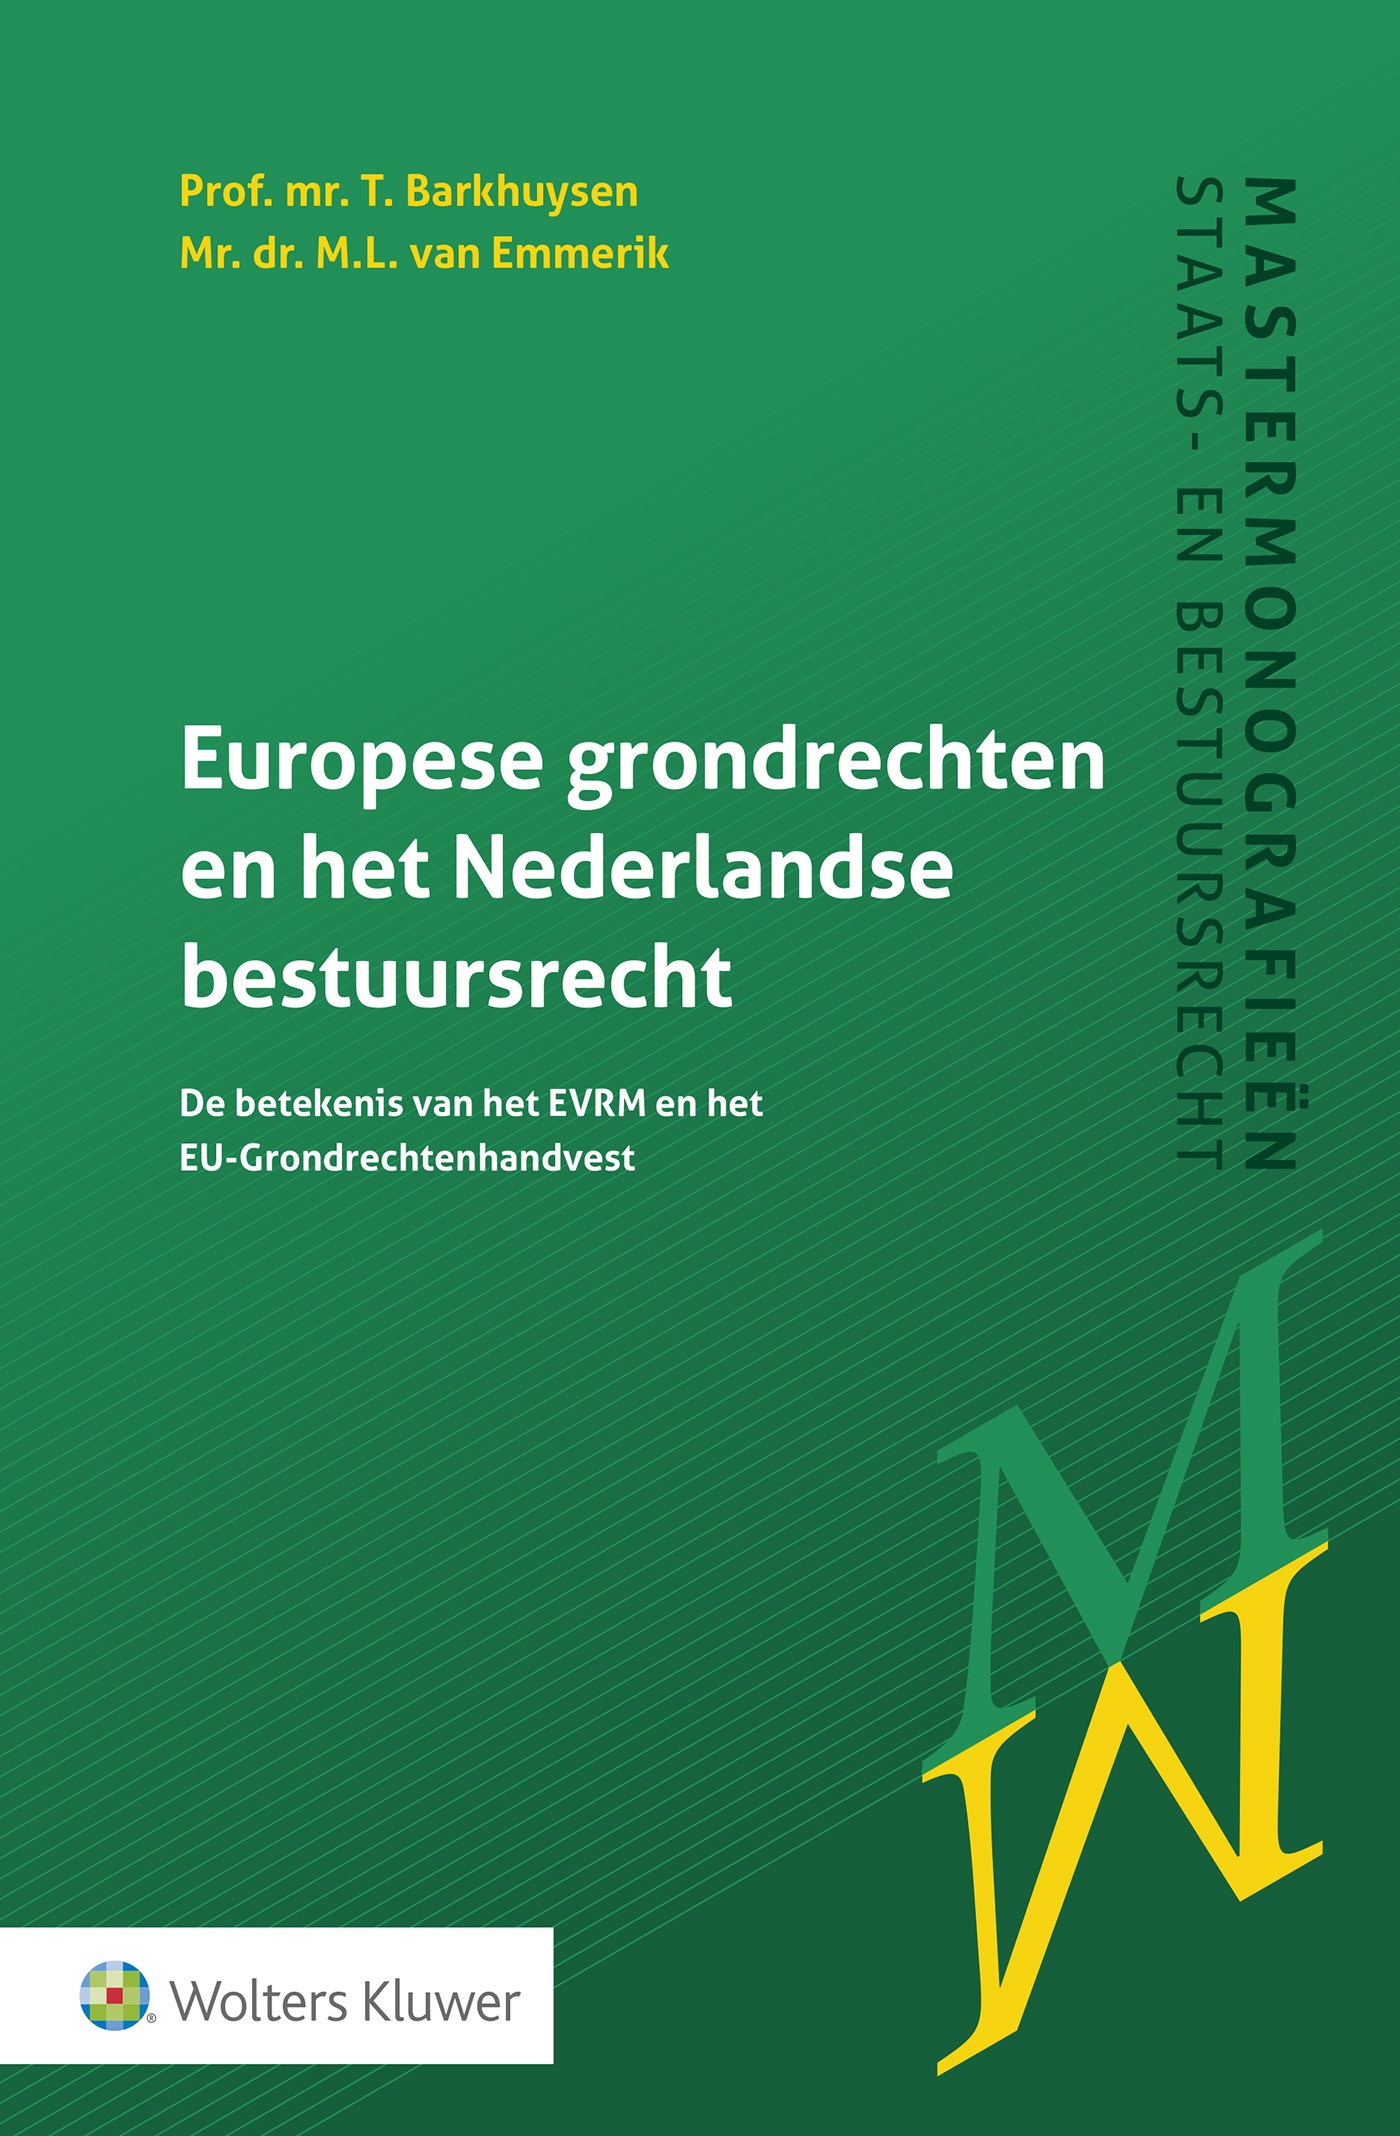 Europese grondrechten en het Nederlandse bestuursrecht (Ebook)